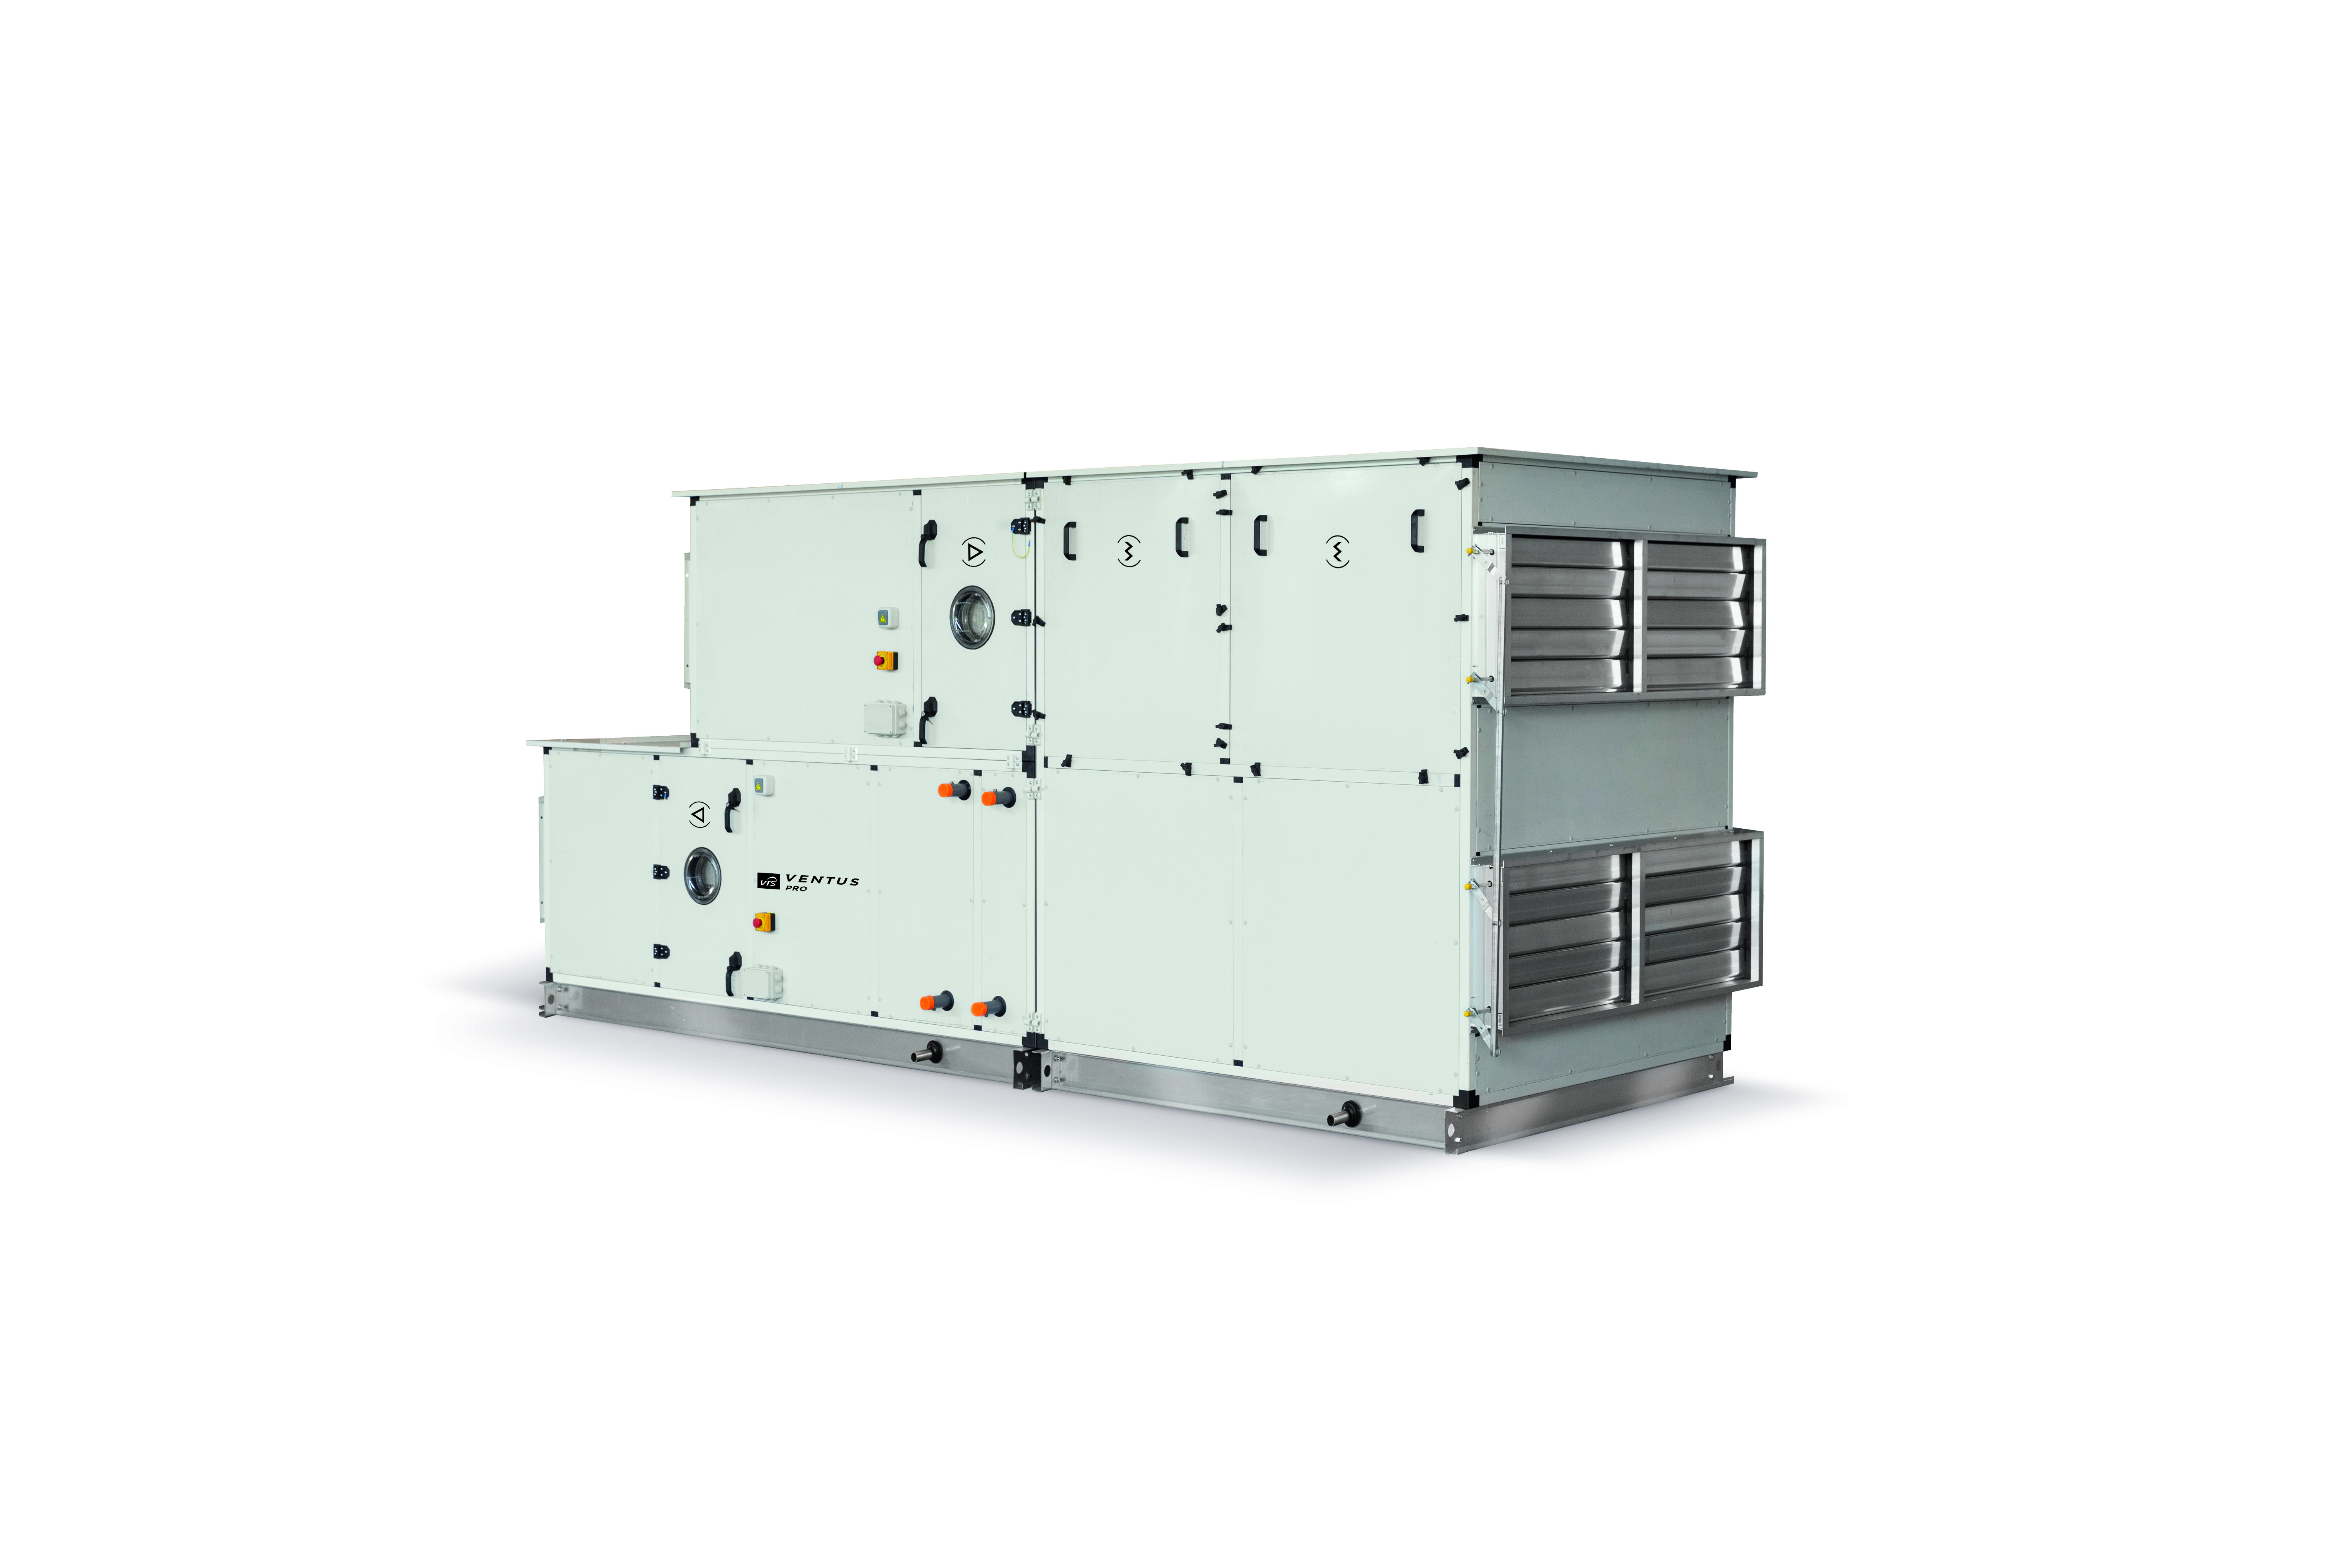 VENTUS PRO - Modułowe i kompaktowe centrale wentylacyjno-klimatyzacyjne dedykowane do wentylacji i klimatyzacji procesów technologicznych oraz wentylacji basenów